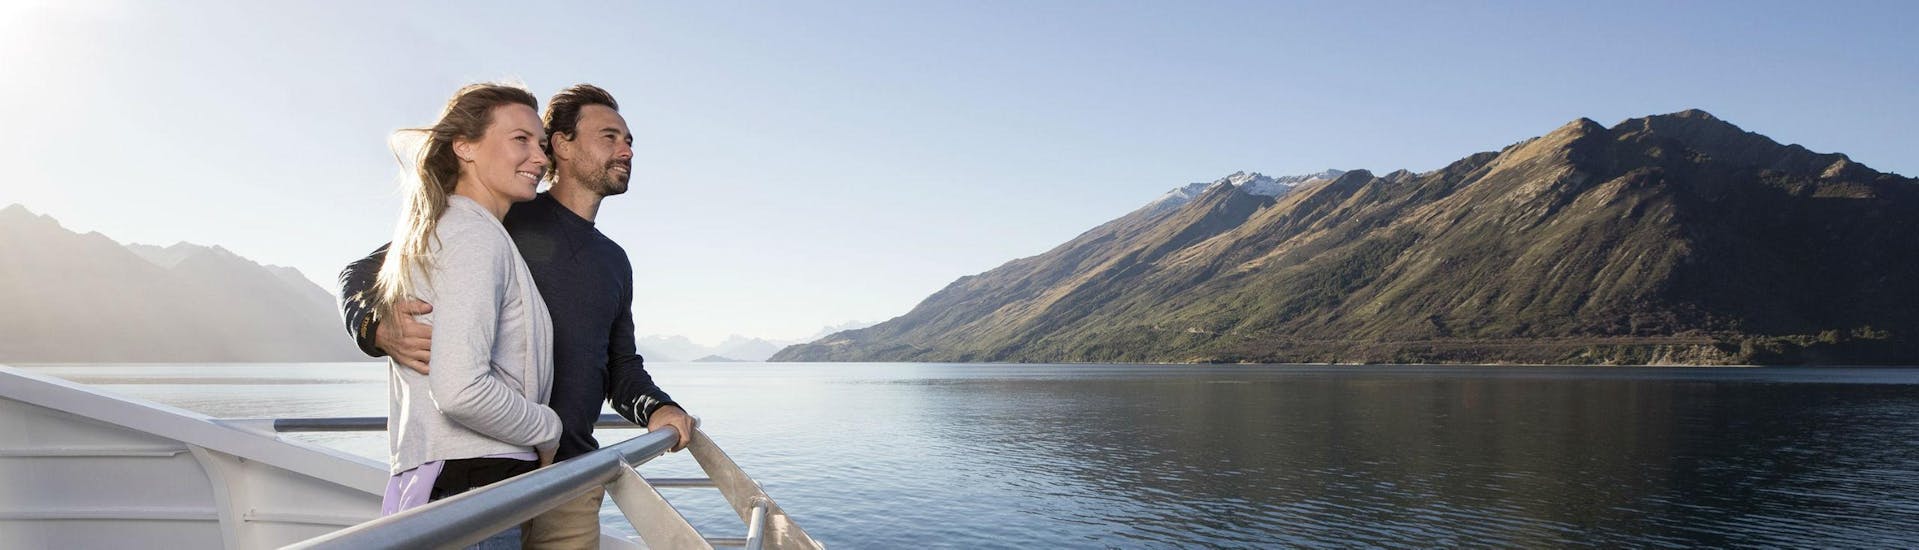 Balade en bateau - Lake Wakatipu avec Observation de la faune.